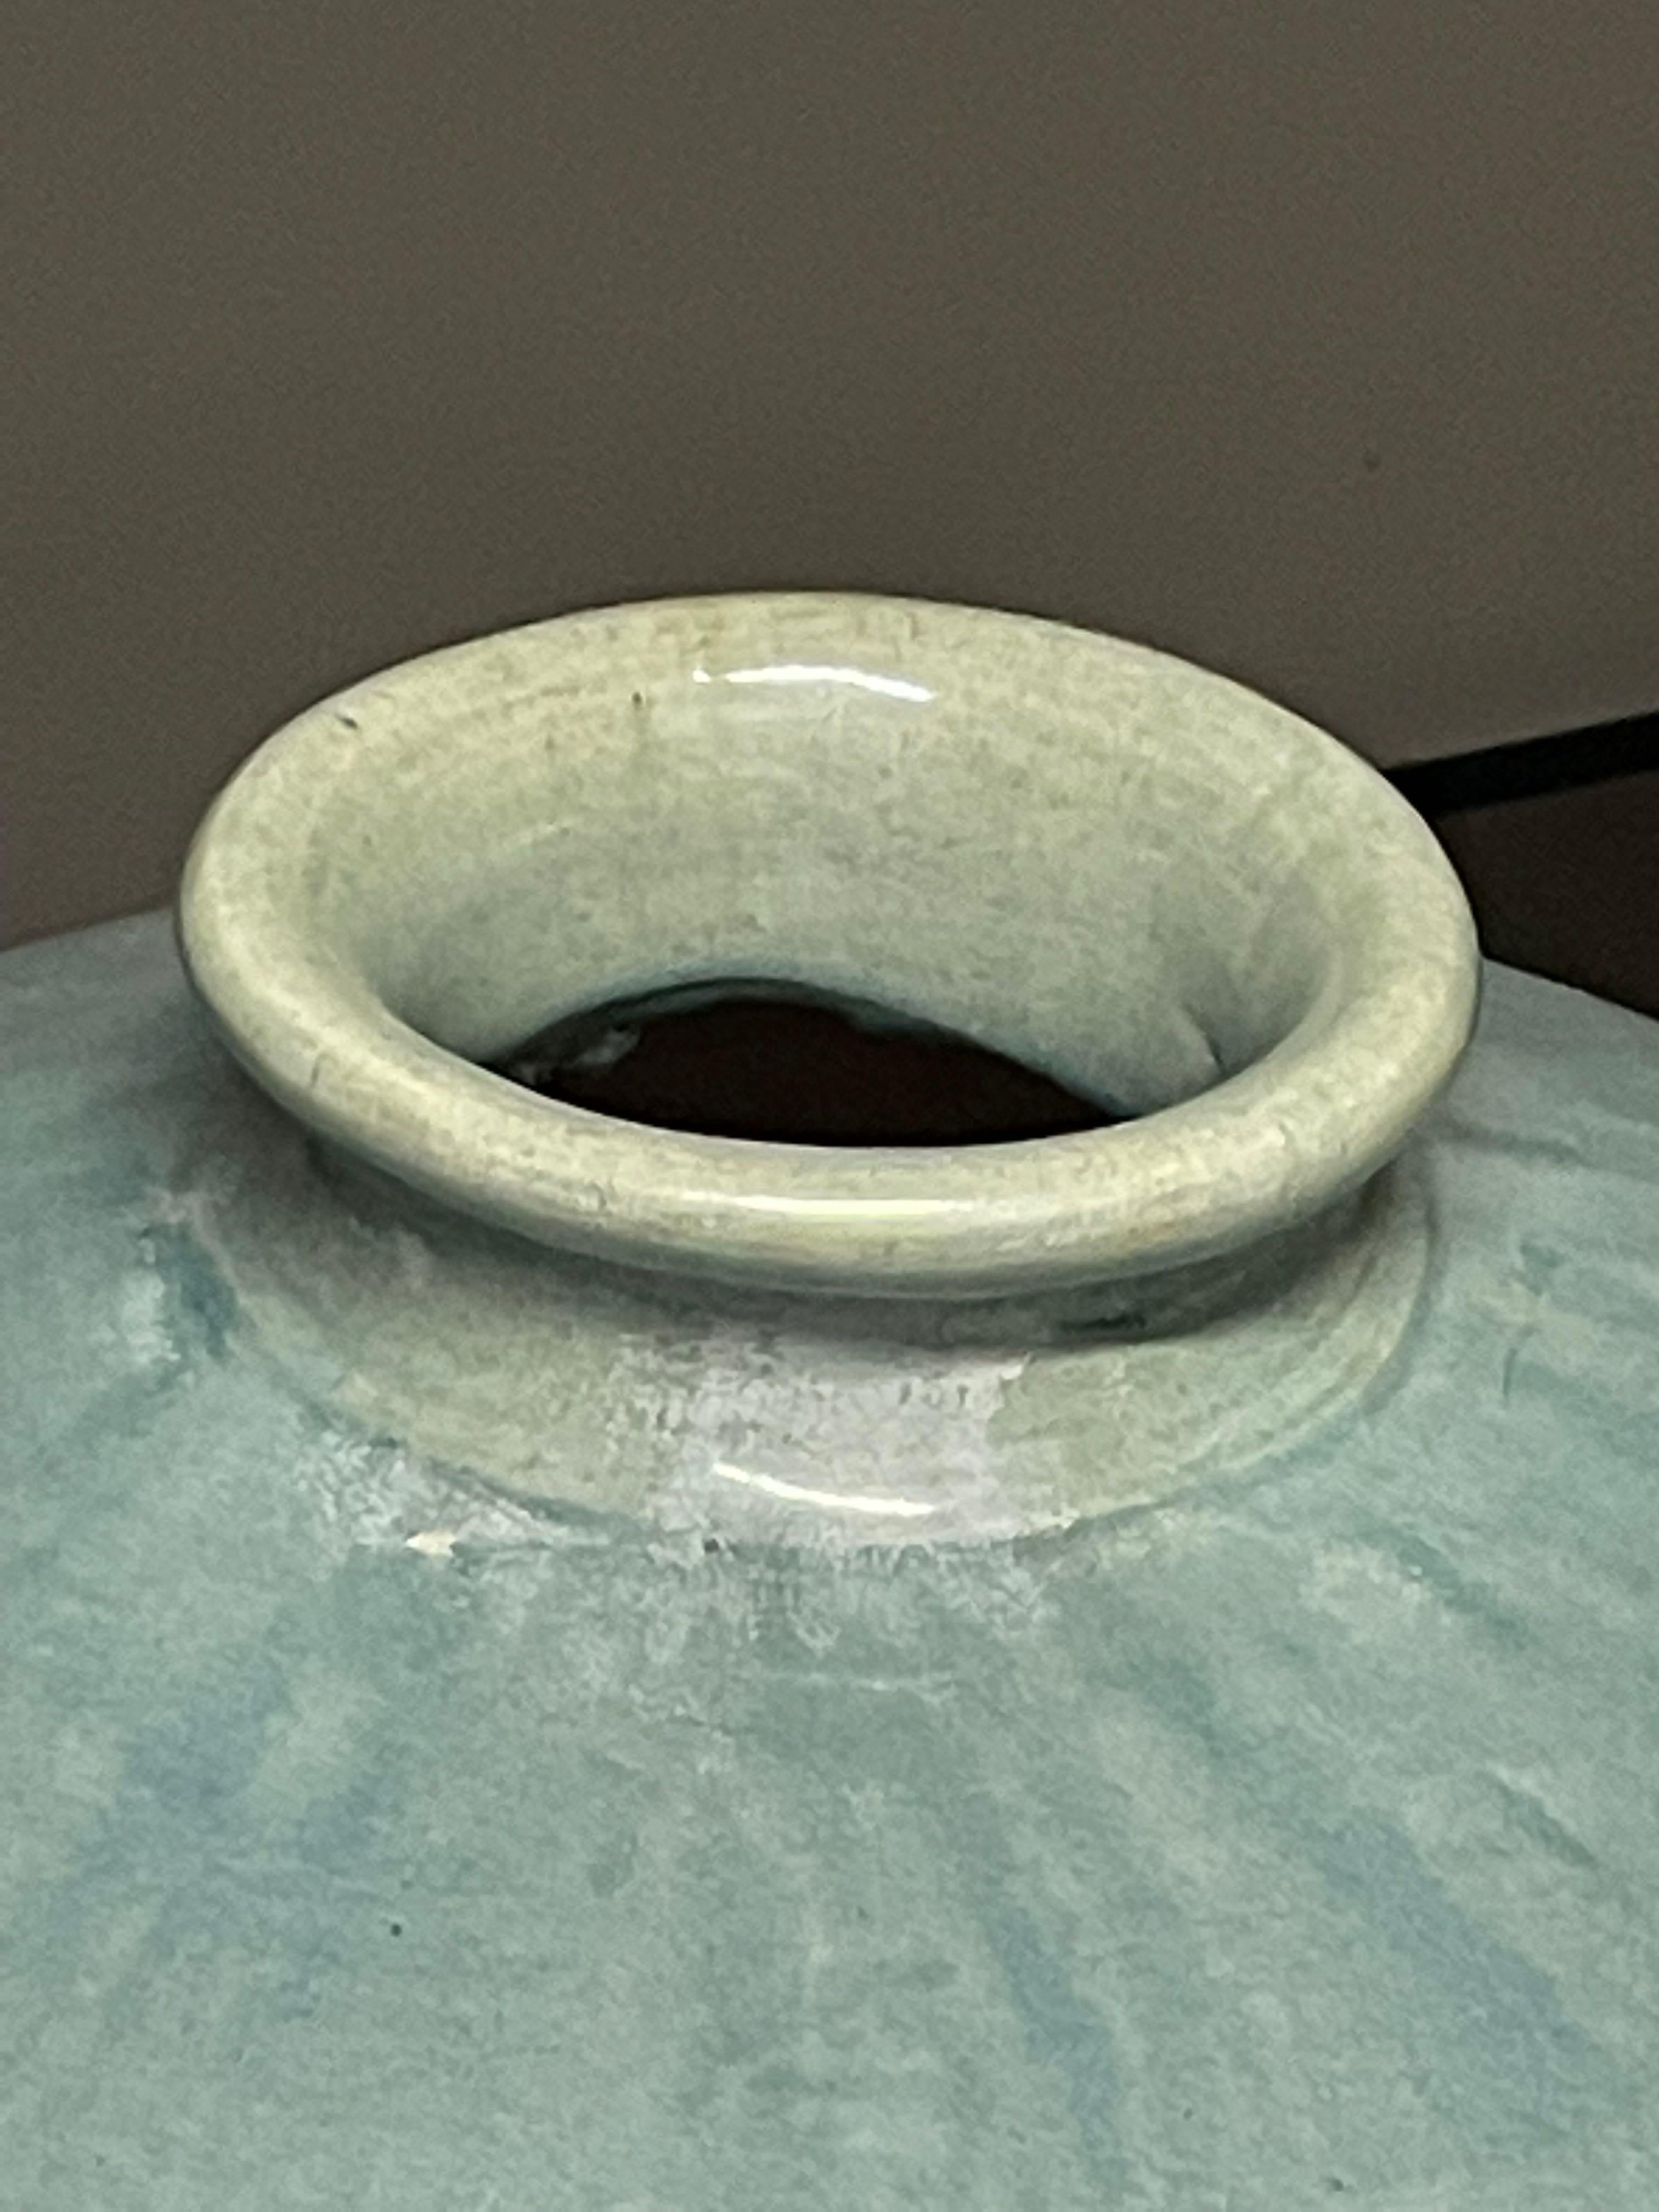 Contemporary Chinese washed turquoise glazed vase.
Squat shape with rounded base.
